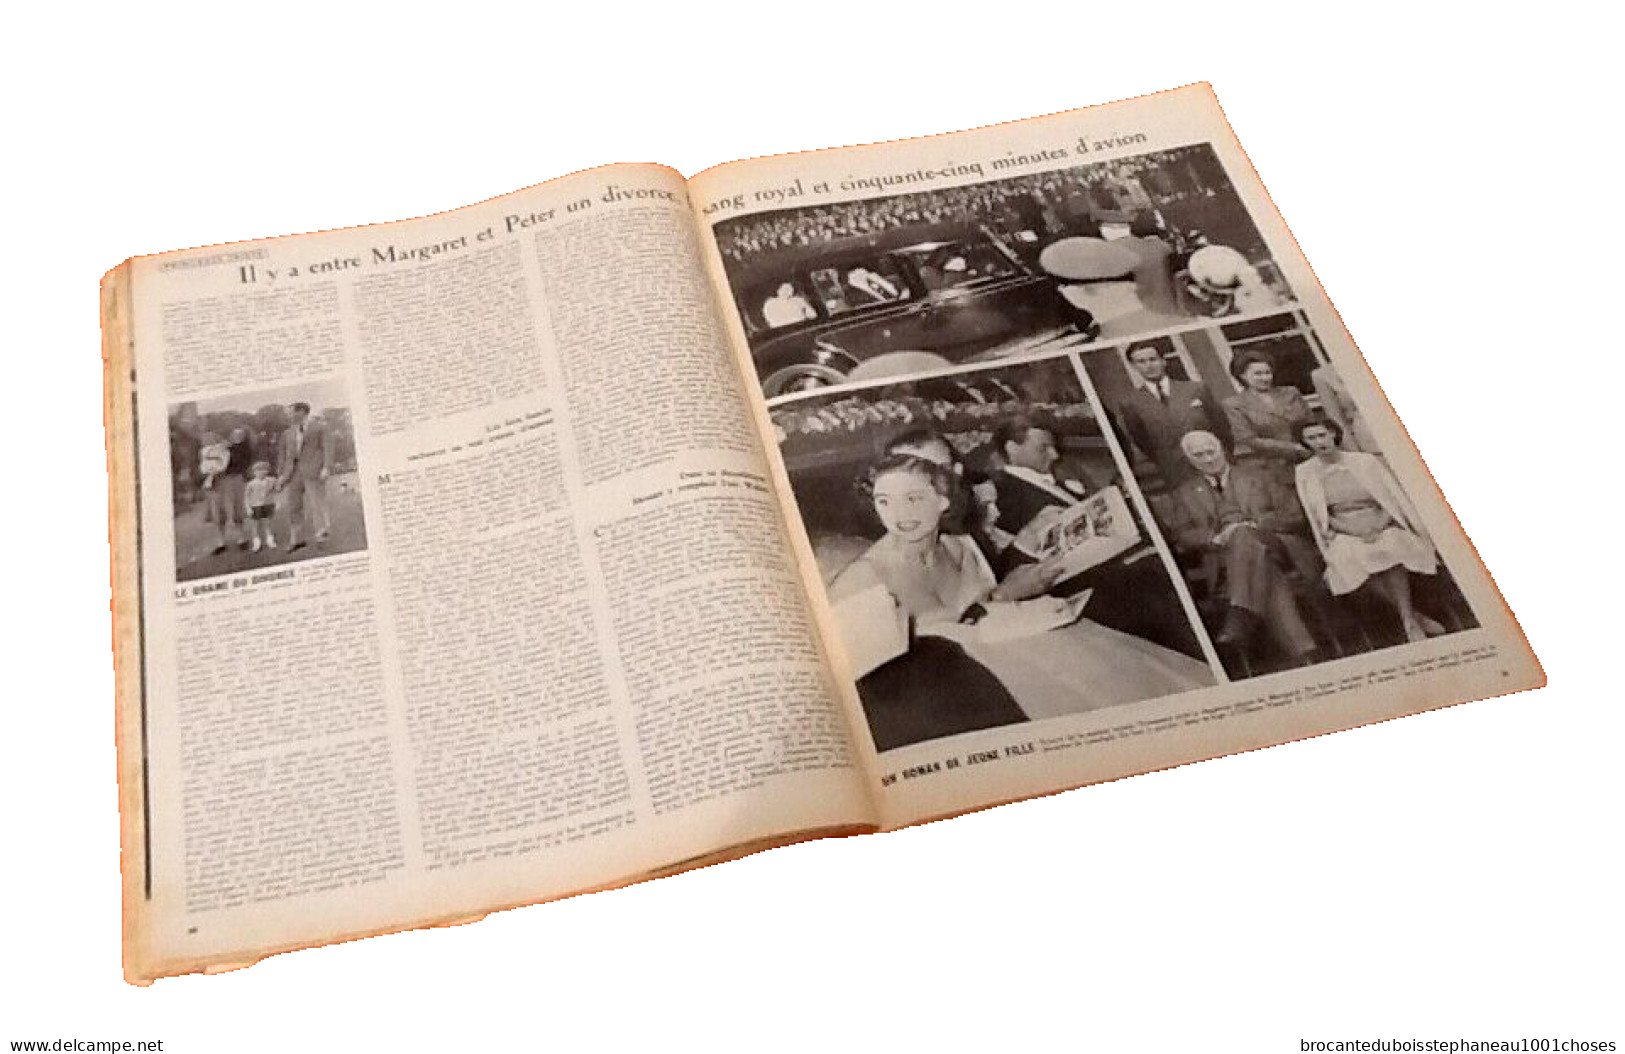 Paris Match Le Tour De France (du 11 Au 18 Juillet 1953) - General Issues